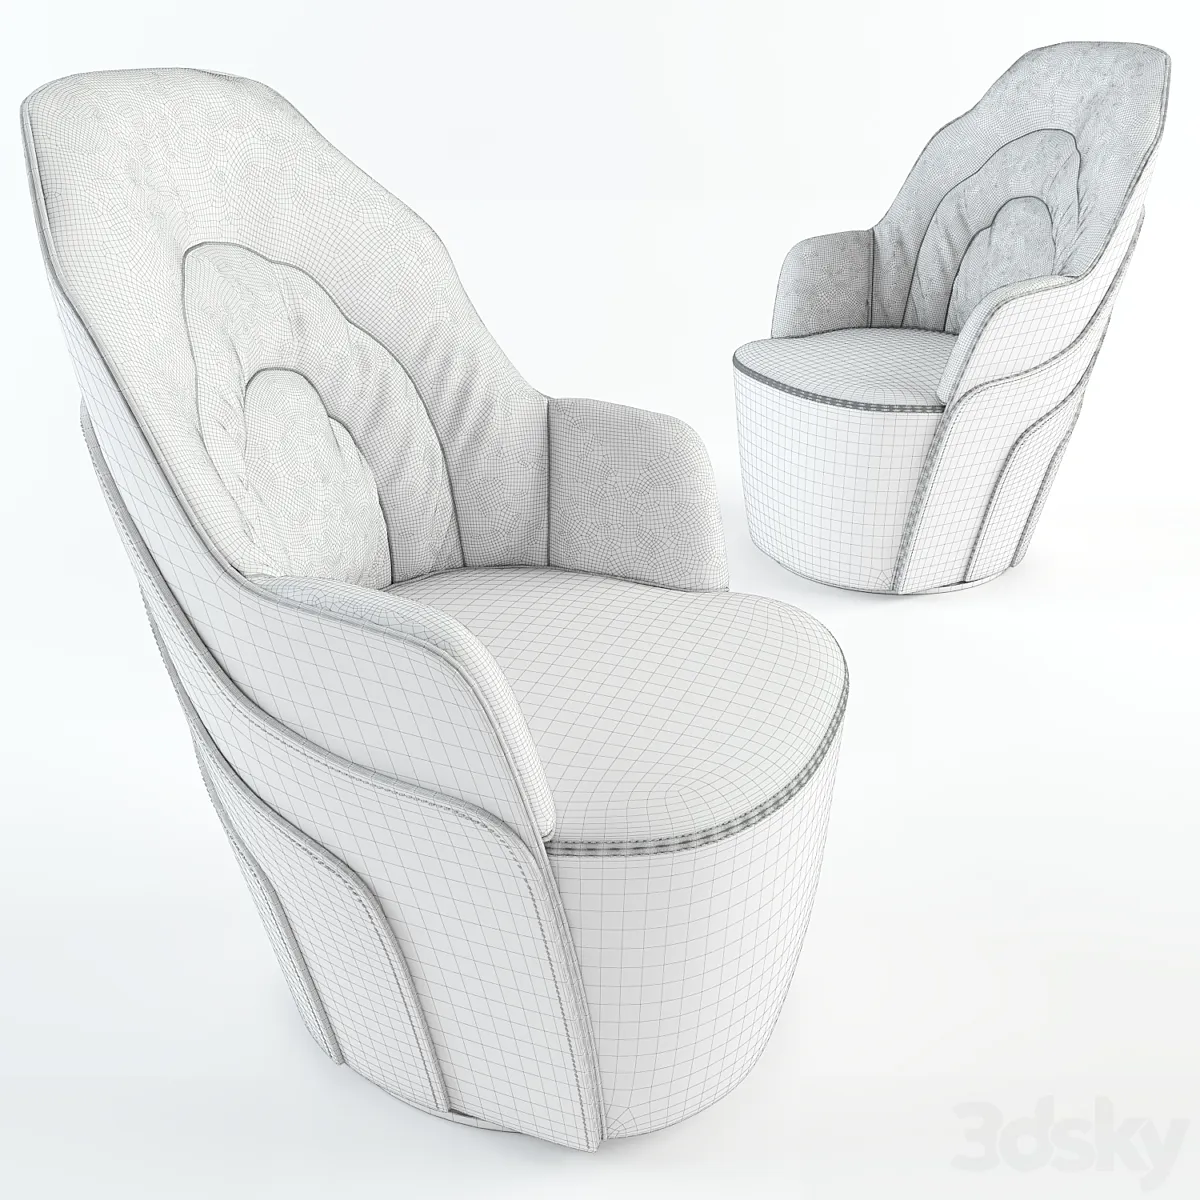 مدل سه بعدی صندلی چرم مدرن 1 - 6